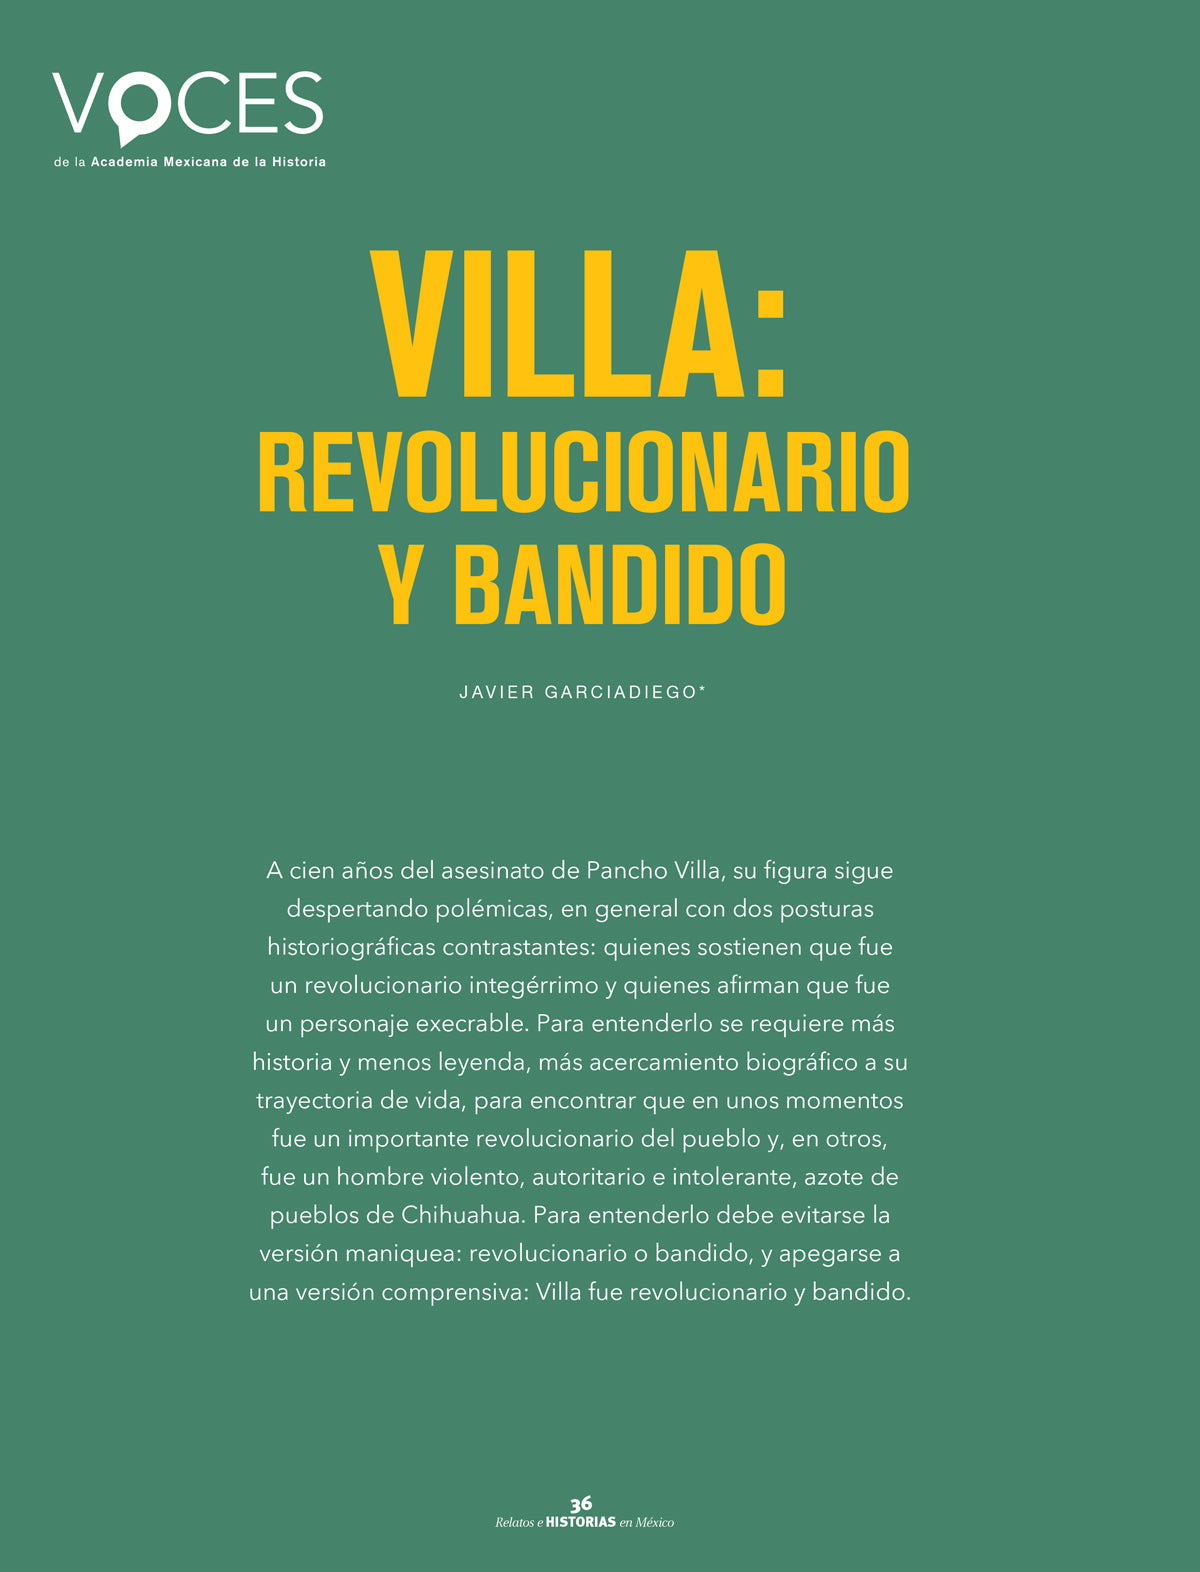 Villa revolucionario y bandido. Más historia, menos leyenda